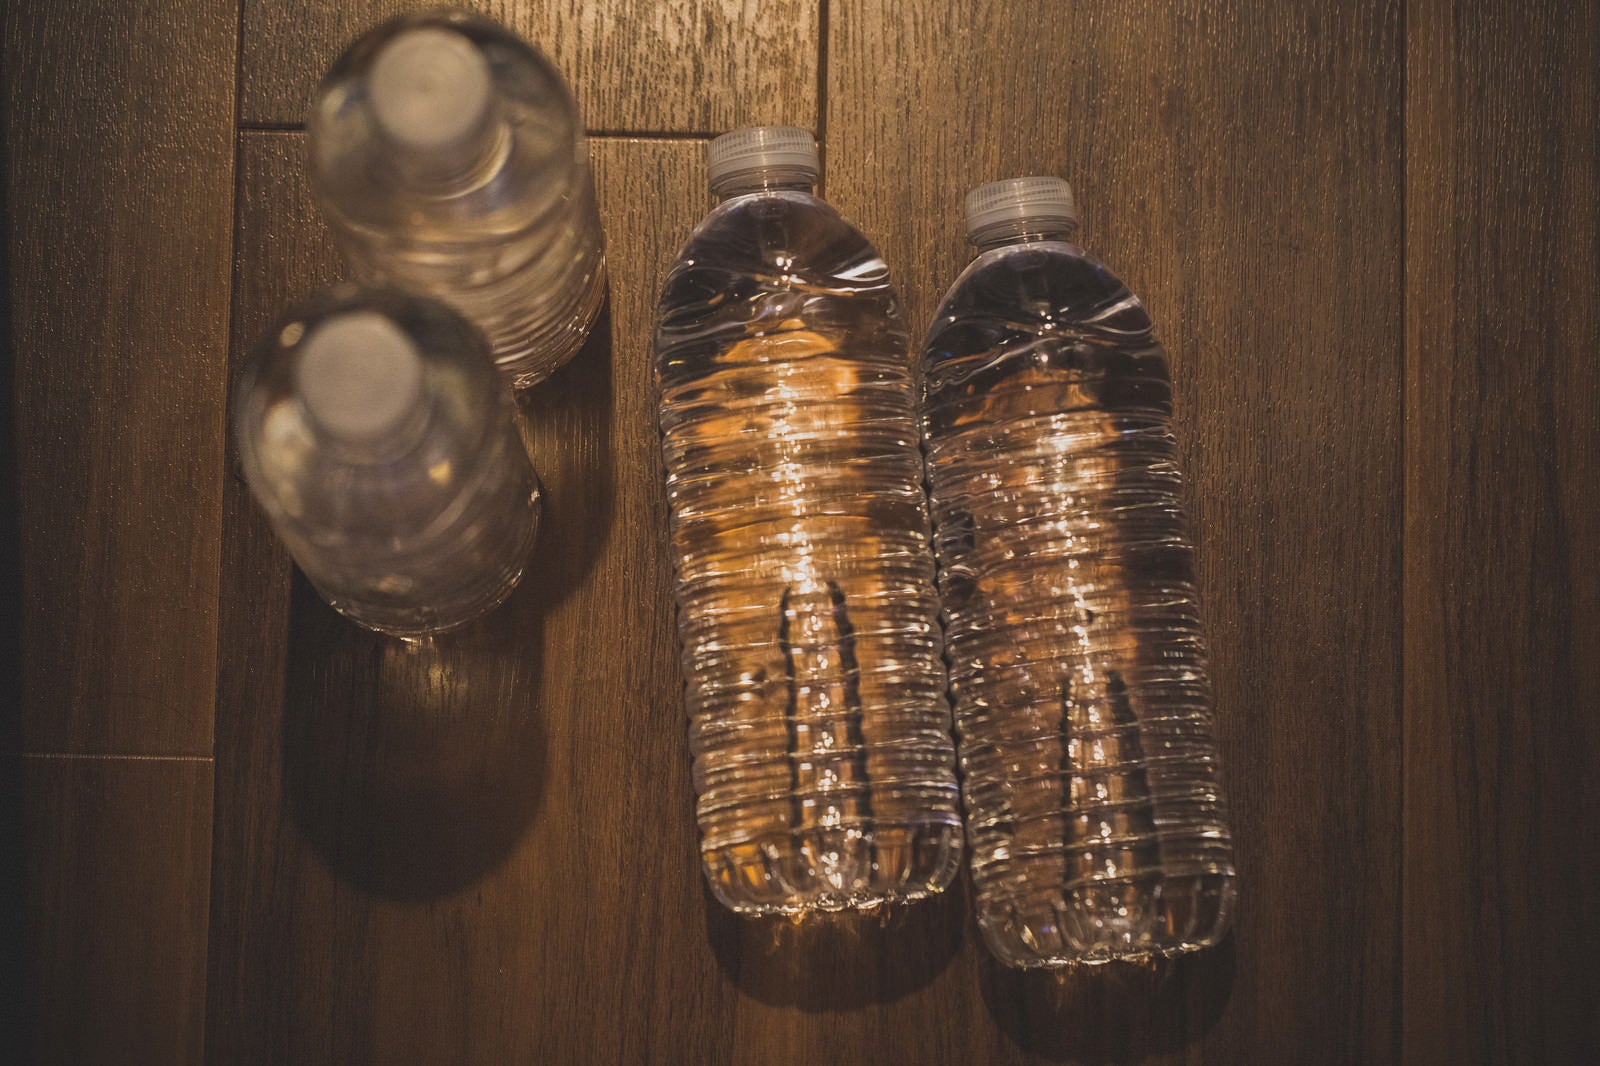 「床に置かれた水のペットボトル」の写真